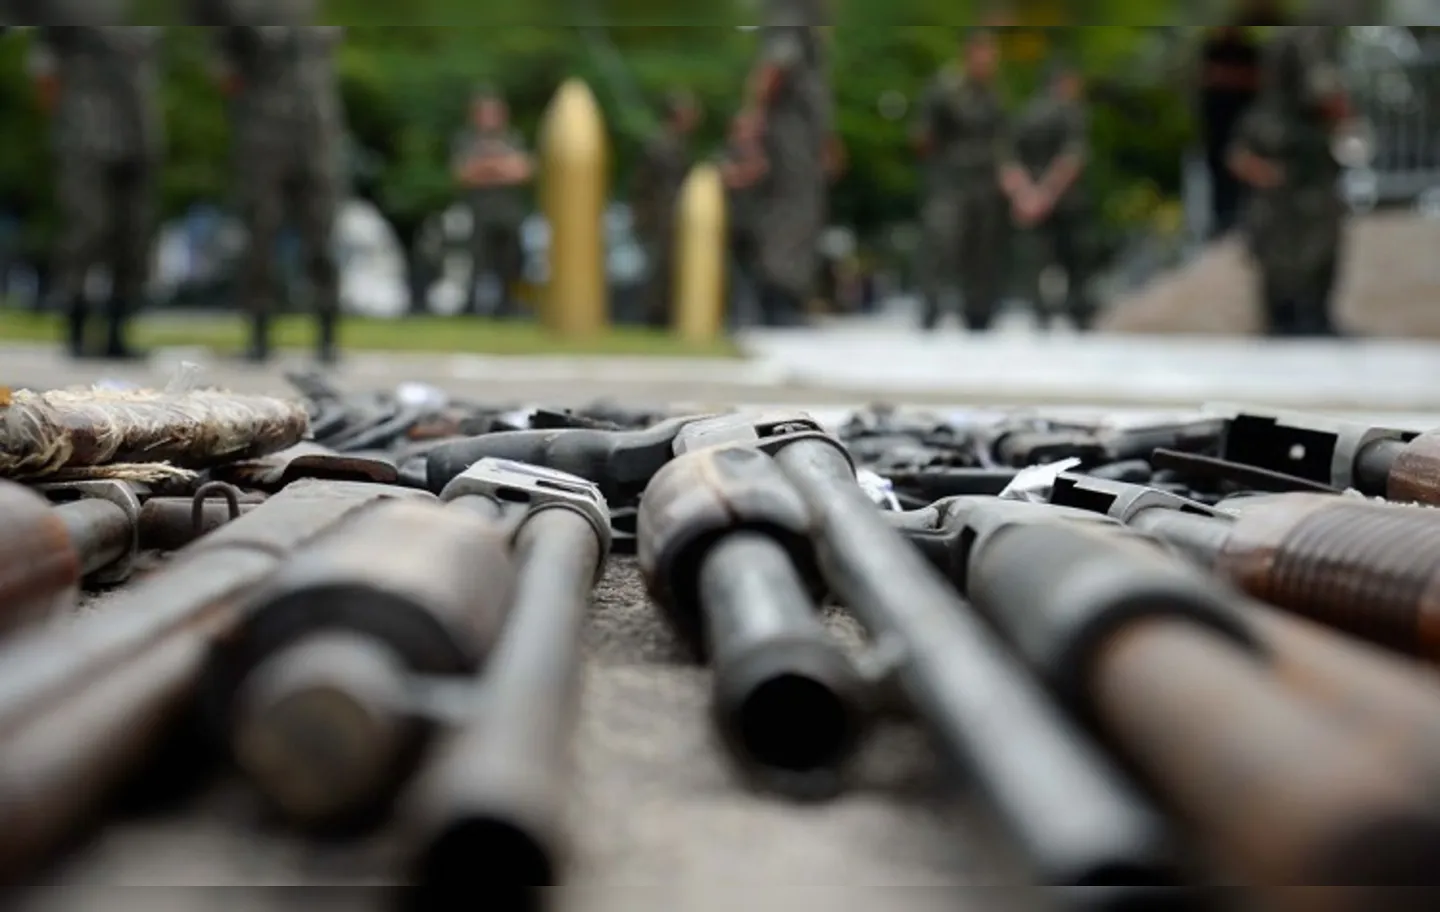 Nos dois primeiros anos da gestão Bolsonaro, o Exército aprovou 216,2 mil registros de armas | Foto: Tânia Rêgo | Agência Brasil